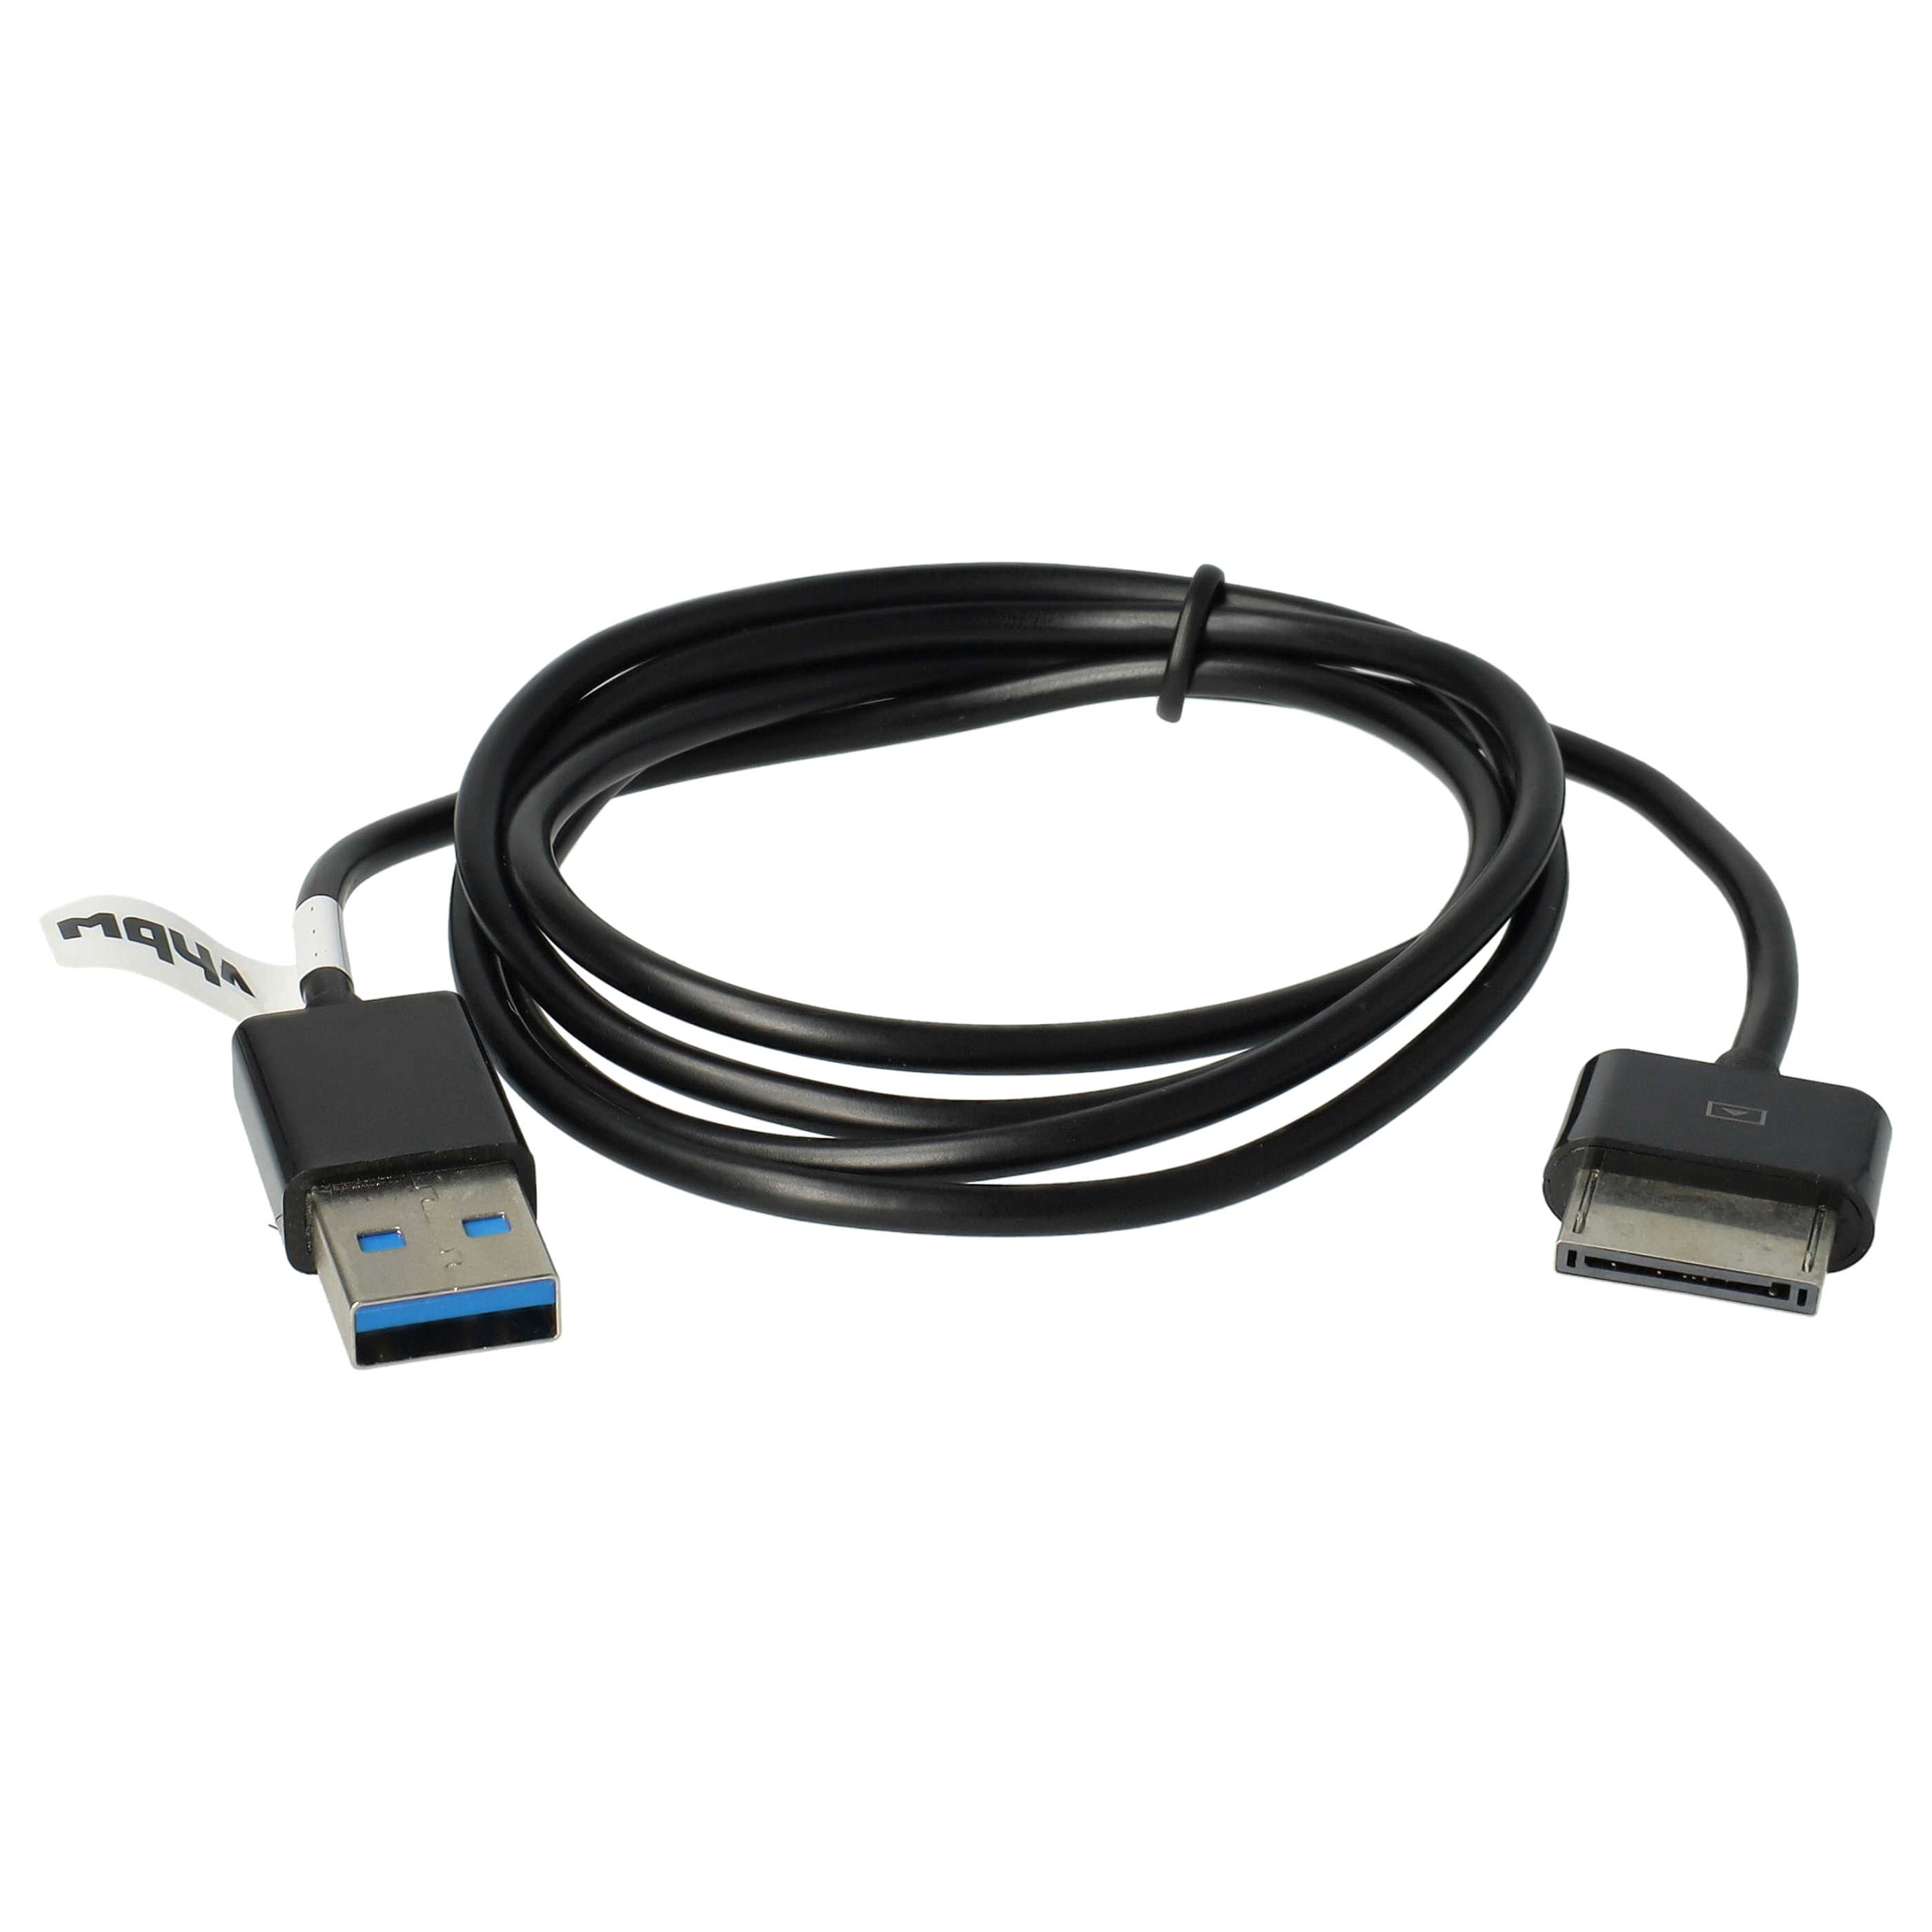 Kabel USB do transmisji danych do aparatu TF701 Asus Transformer Pad Infinity - 100cm 